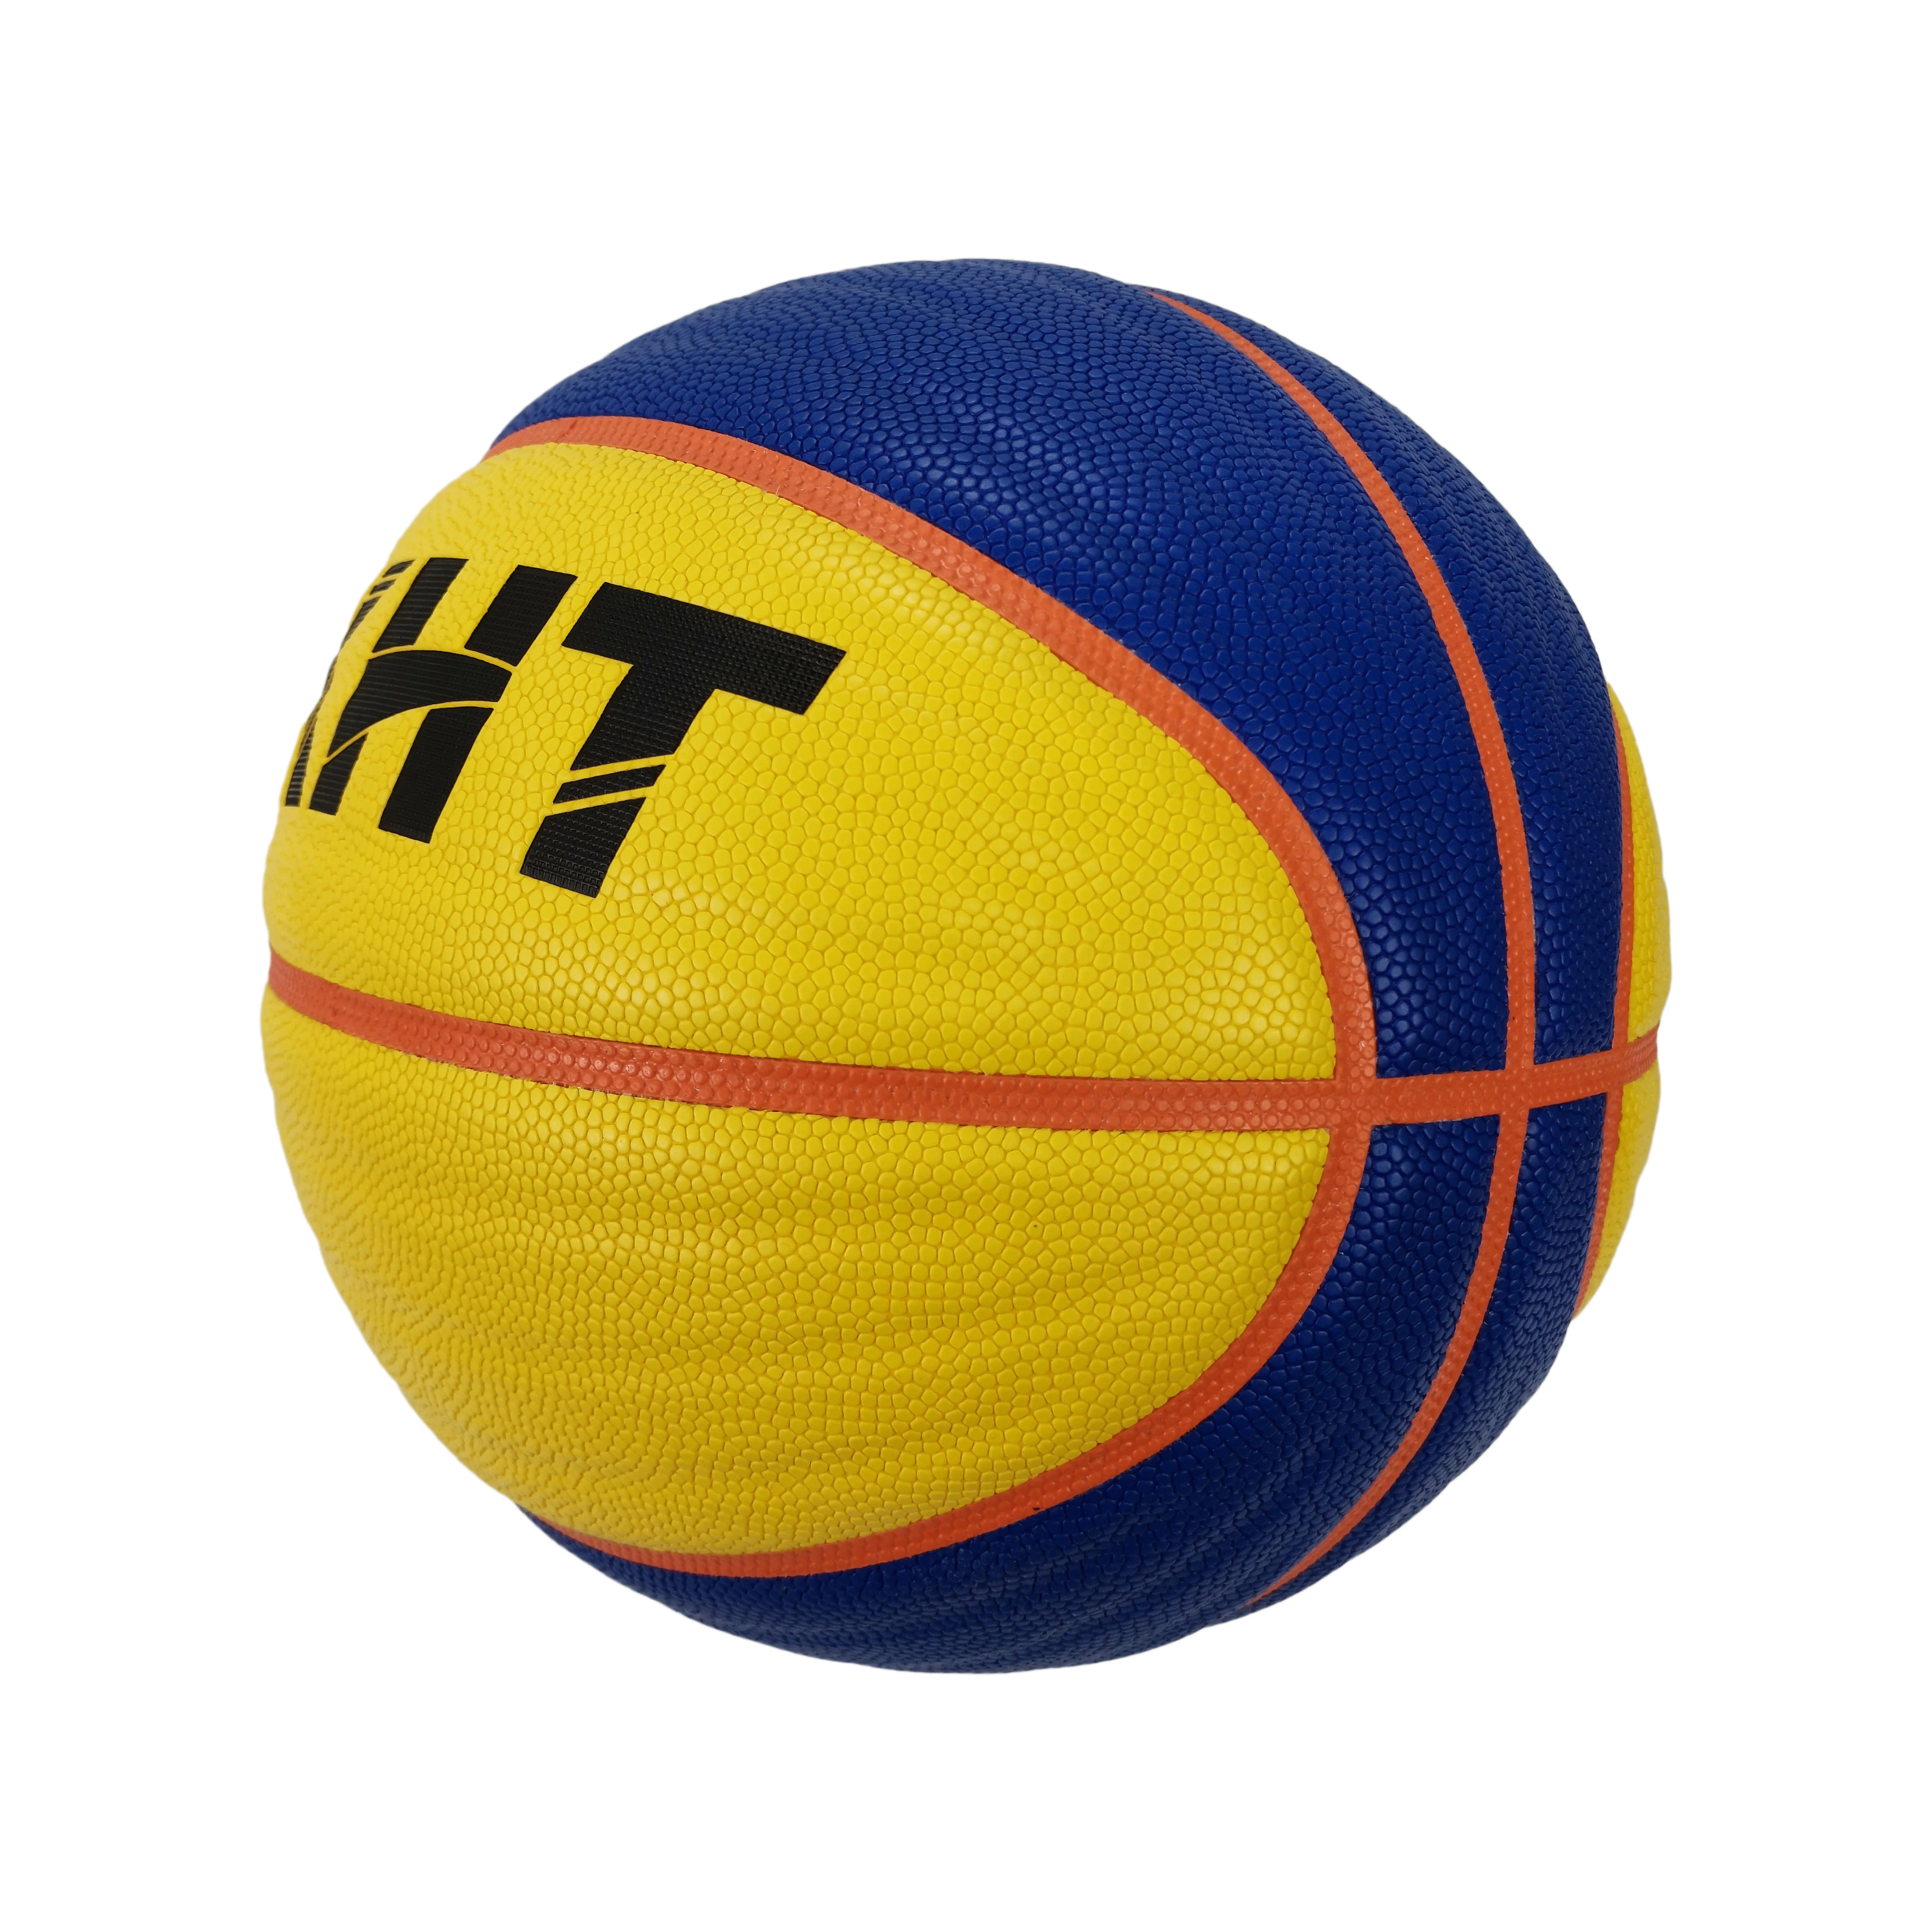 Канал ball. Баскетбольный мяч ФИБА. Баскетбольный мяч FIBA 3x3 Official 6. Футболка 3x3 FIBA. Насколь размером отличается мяч баскетбольный 7 и мяч ФИБА 3x3.